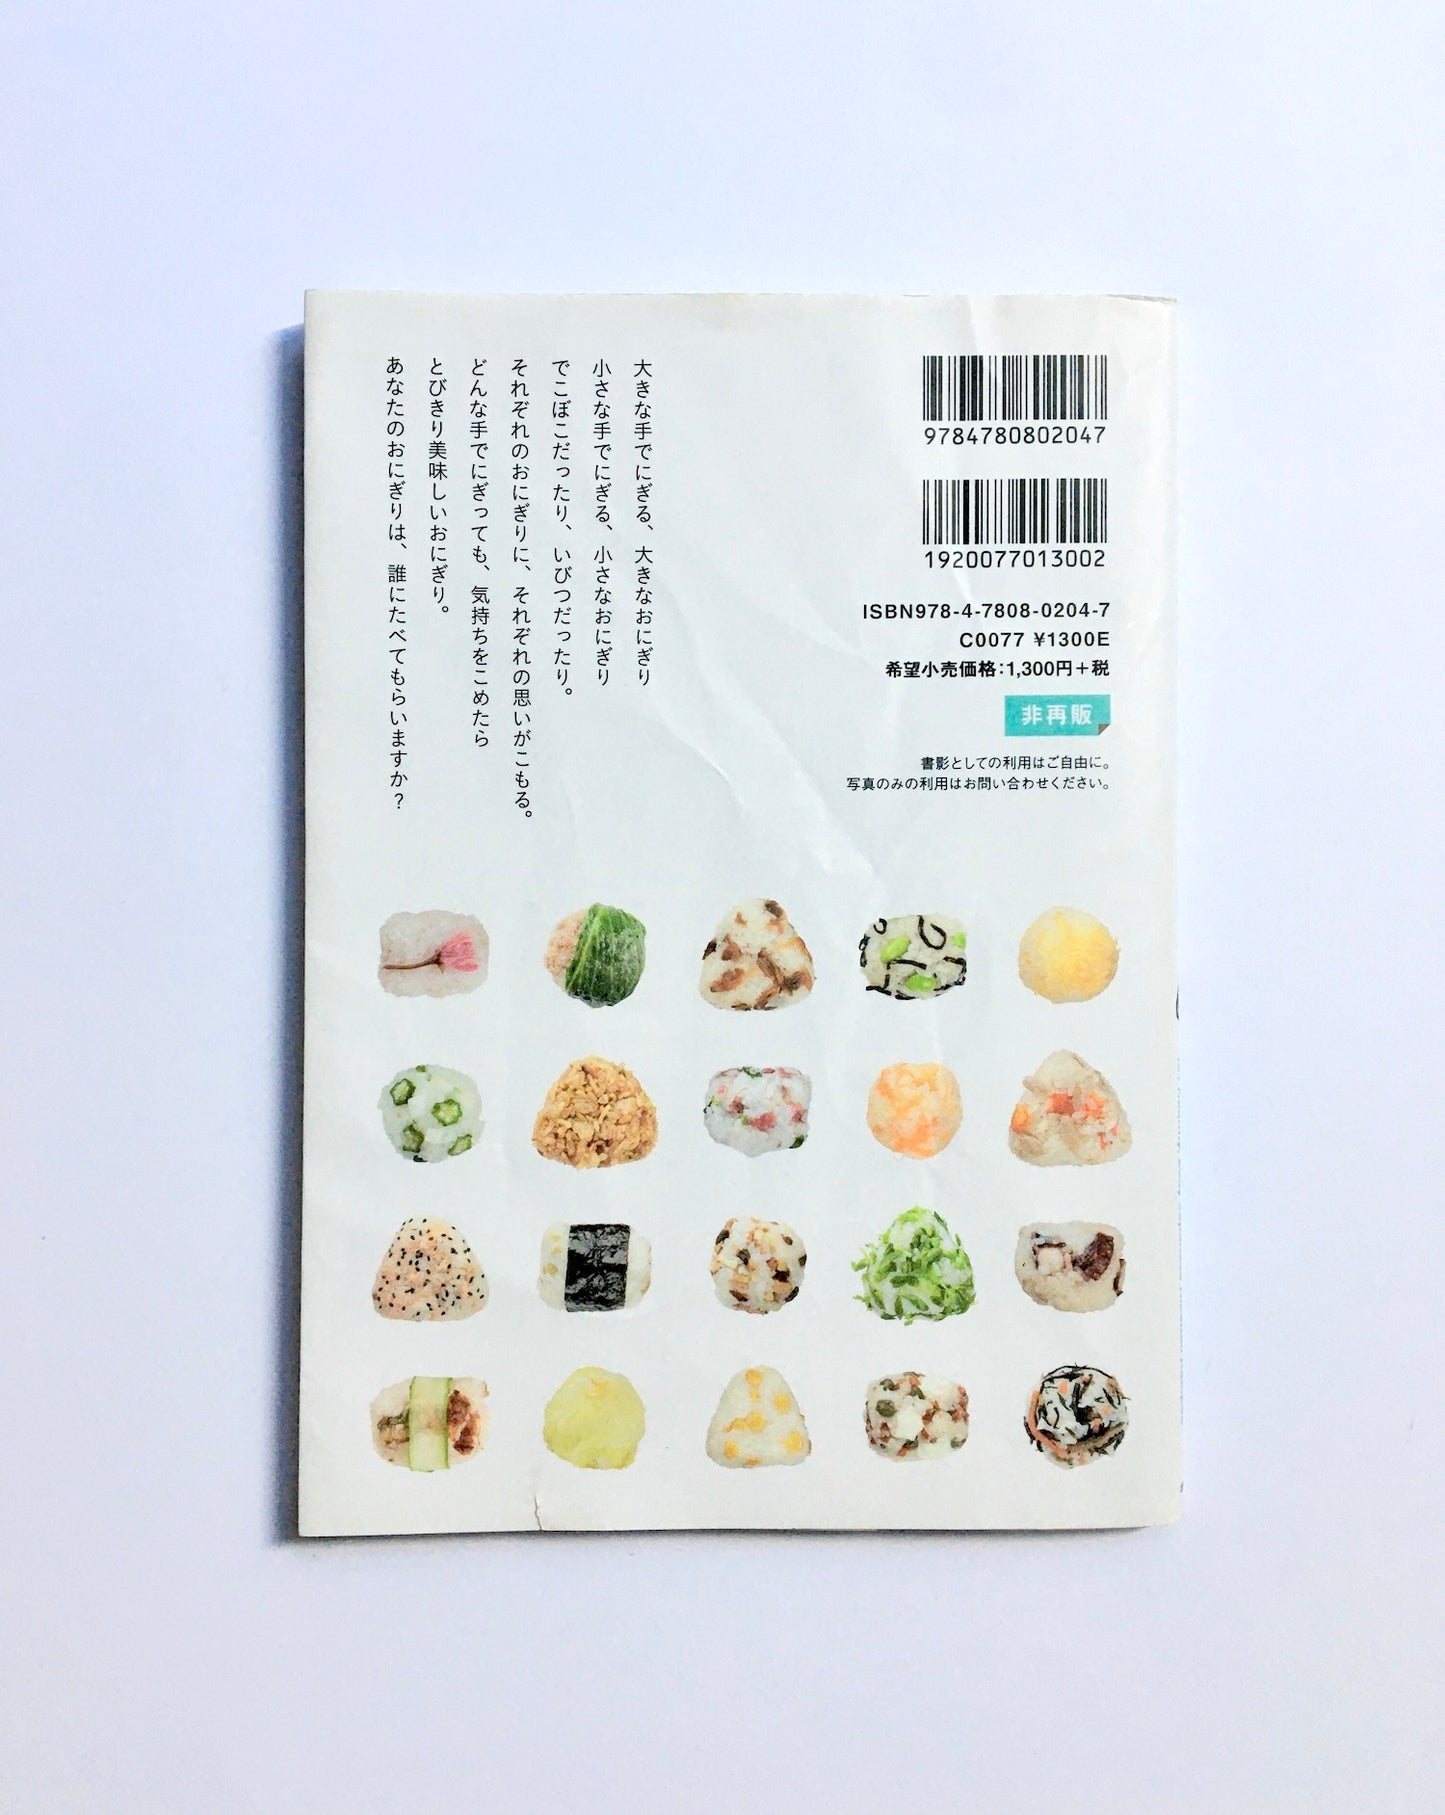 おにぎりレシピ101:  EVERYDAY ONIGIRI 101 Healthy, Easy Japanese Riceball Recipes